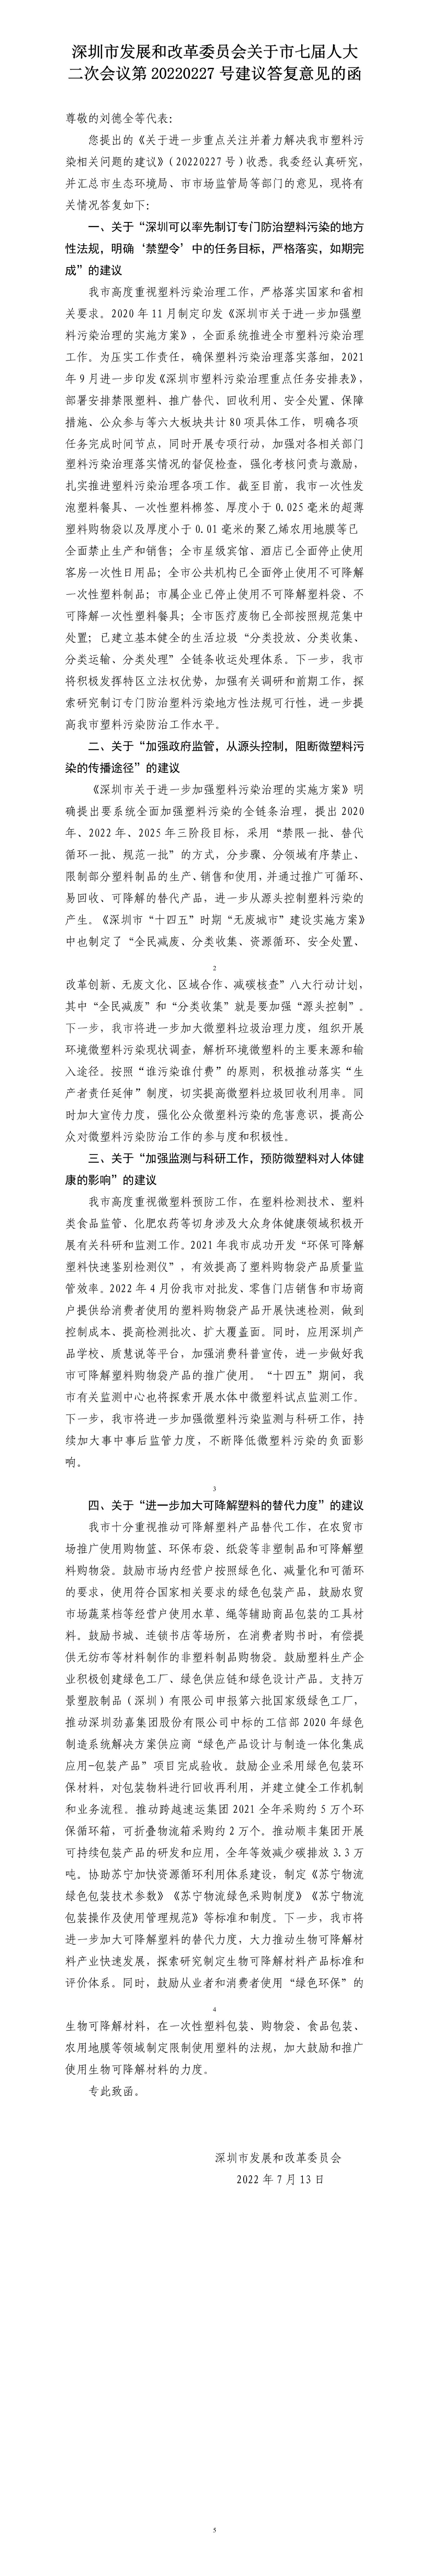 深圳市发展和改革委员会关于市七届人大二次会议第20220227号建议答复意见的函.jpg